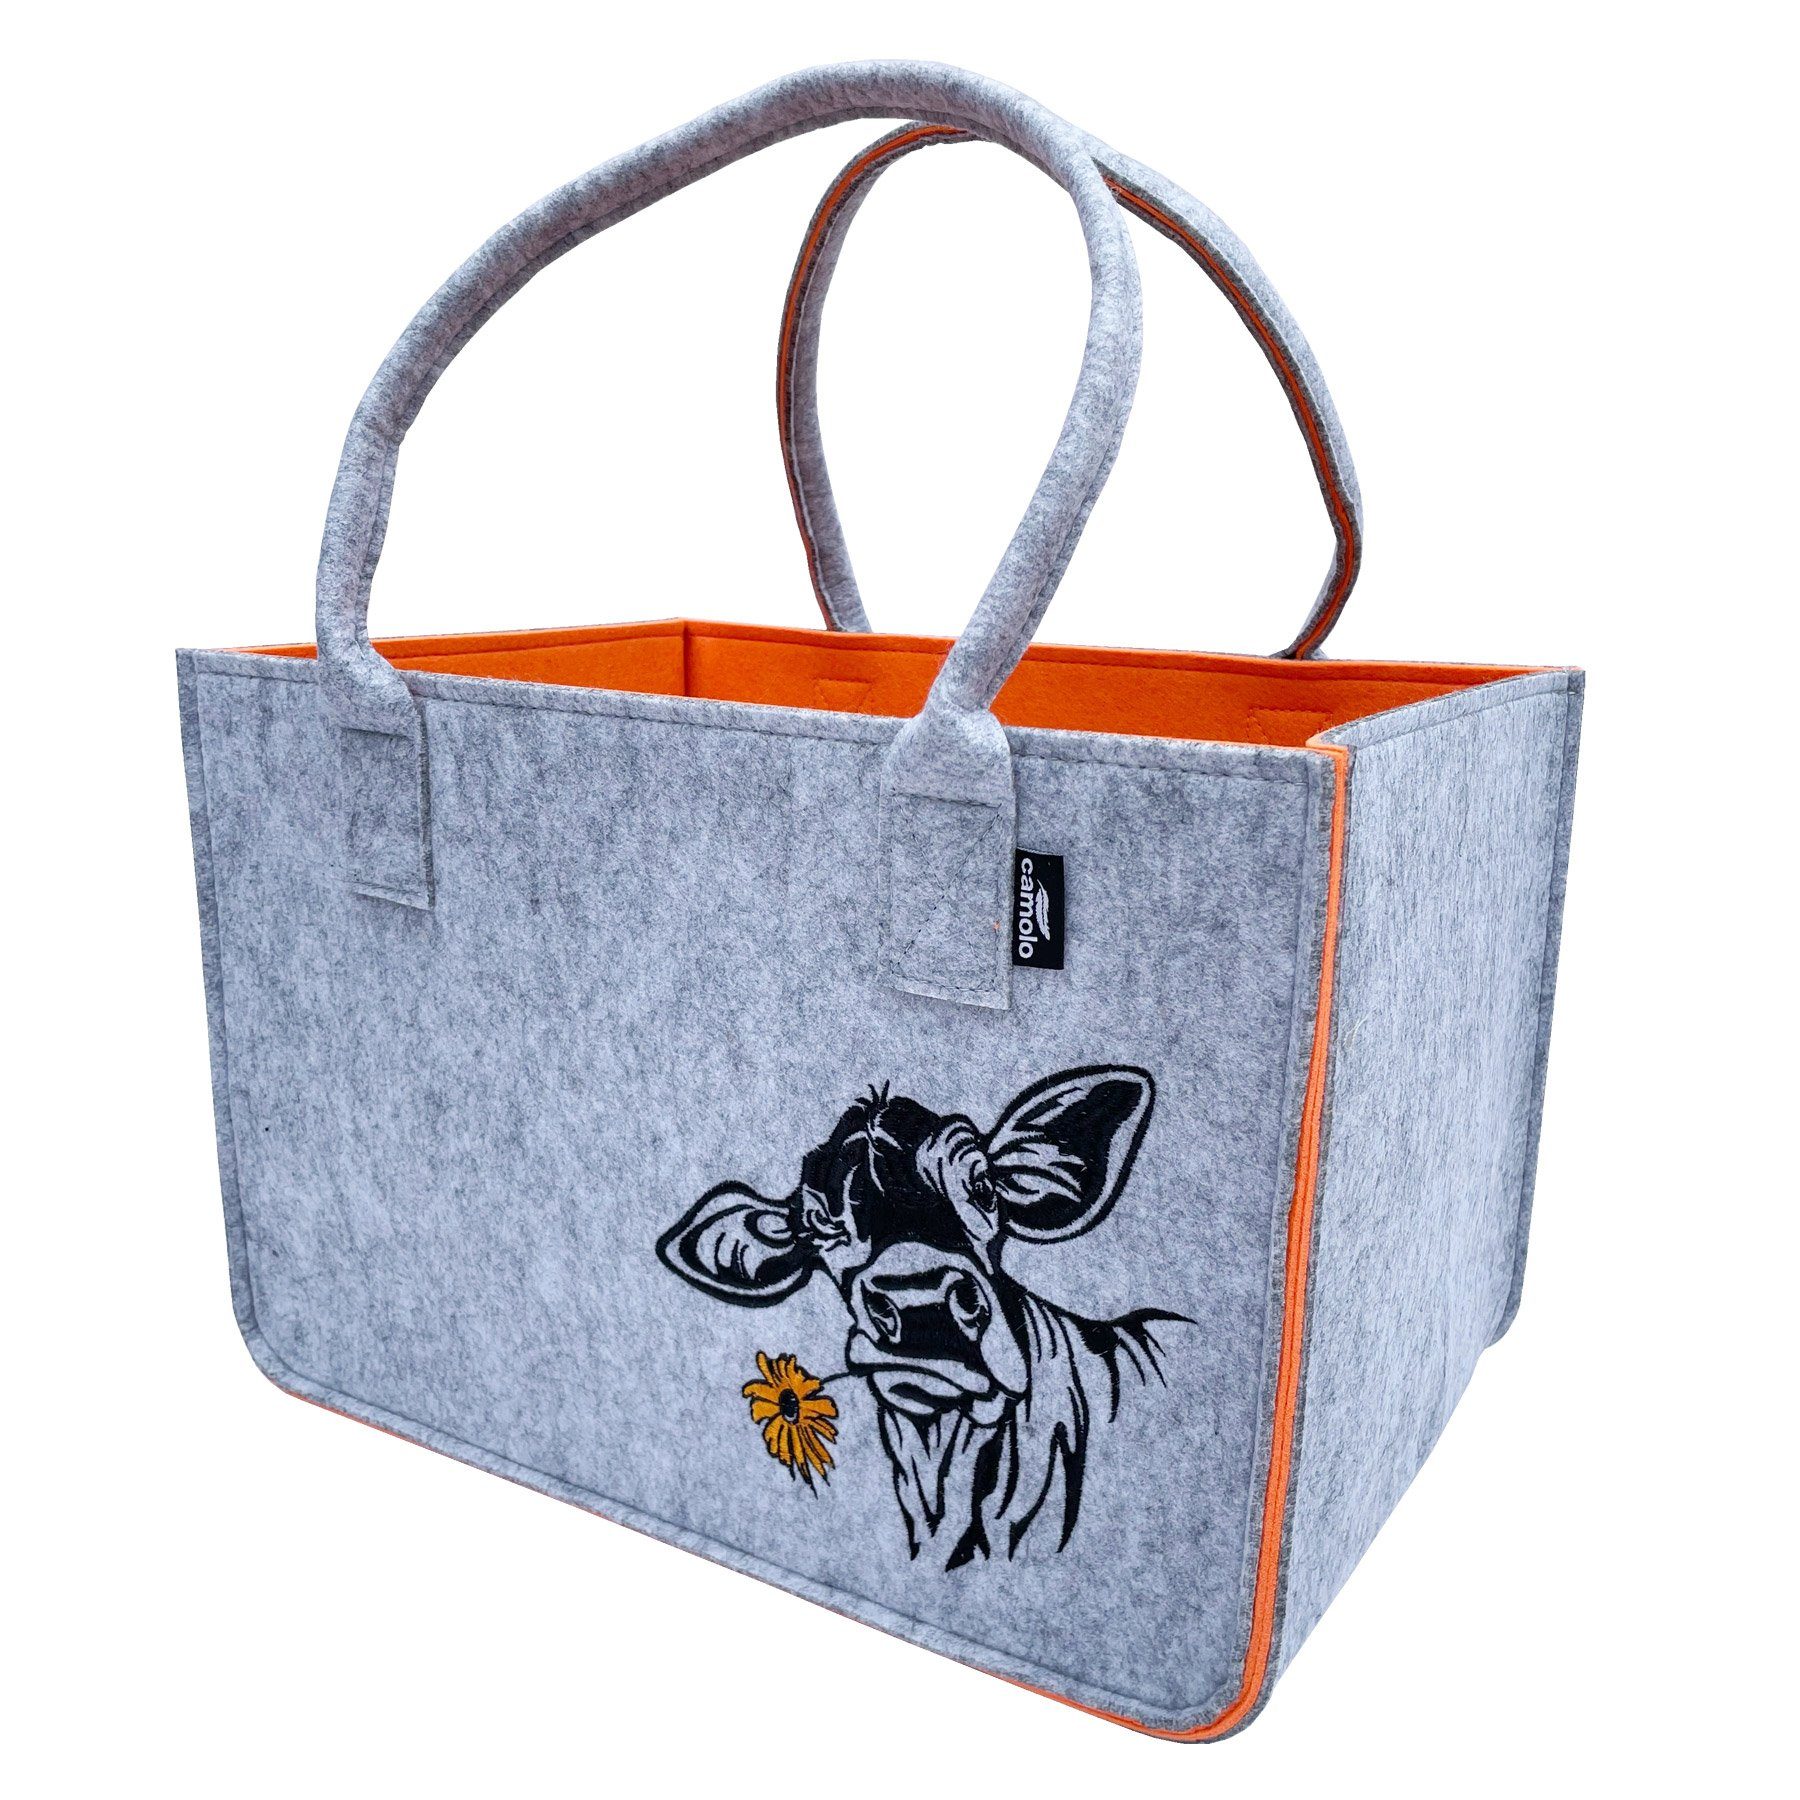 Camolo Tragetasche Filz Einkaufstasche COW Orange Einkaufskorb Shopping Tasche